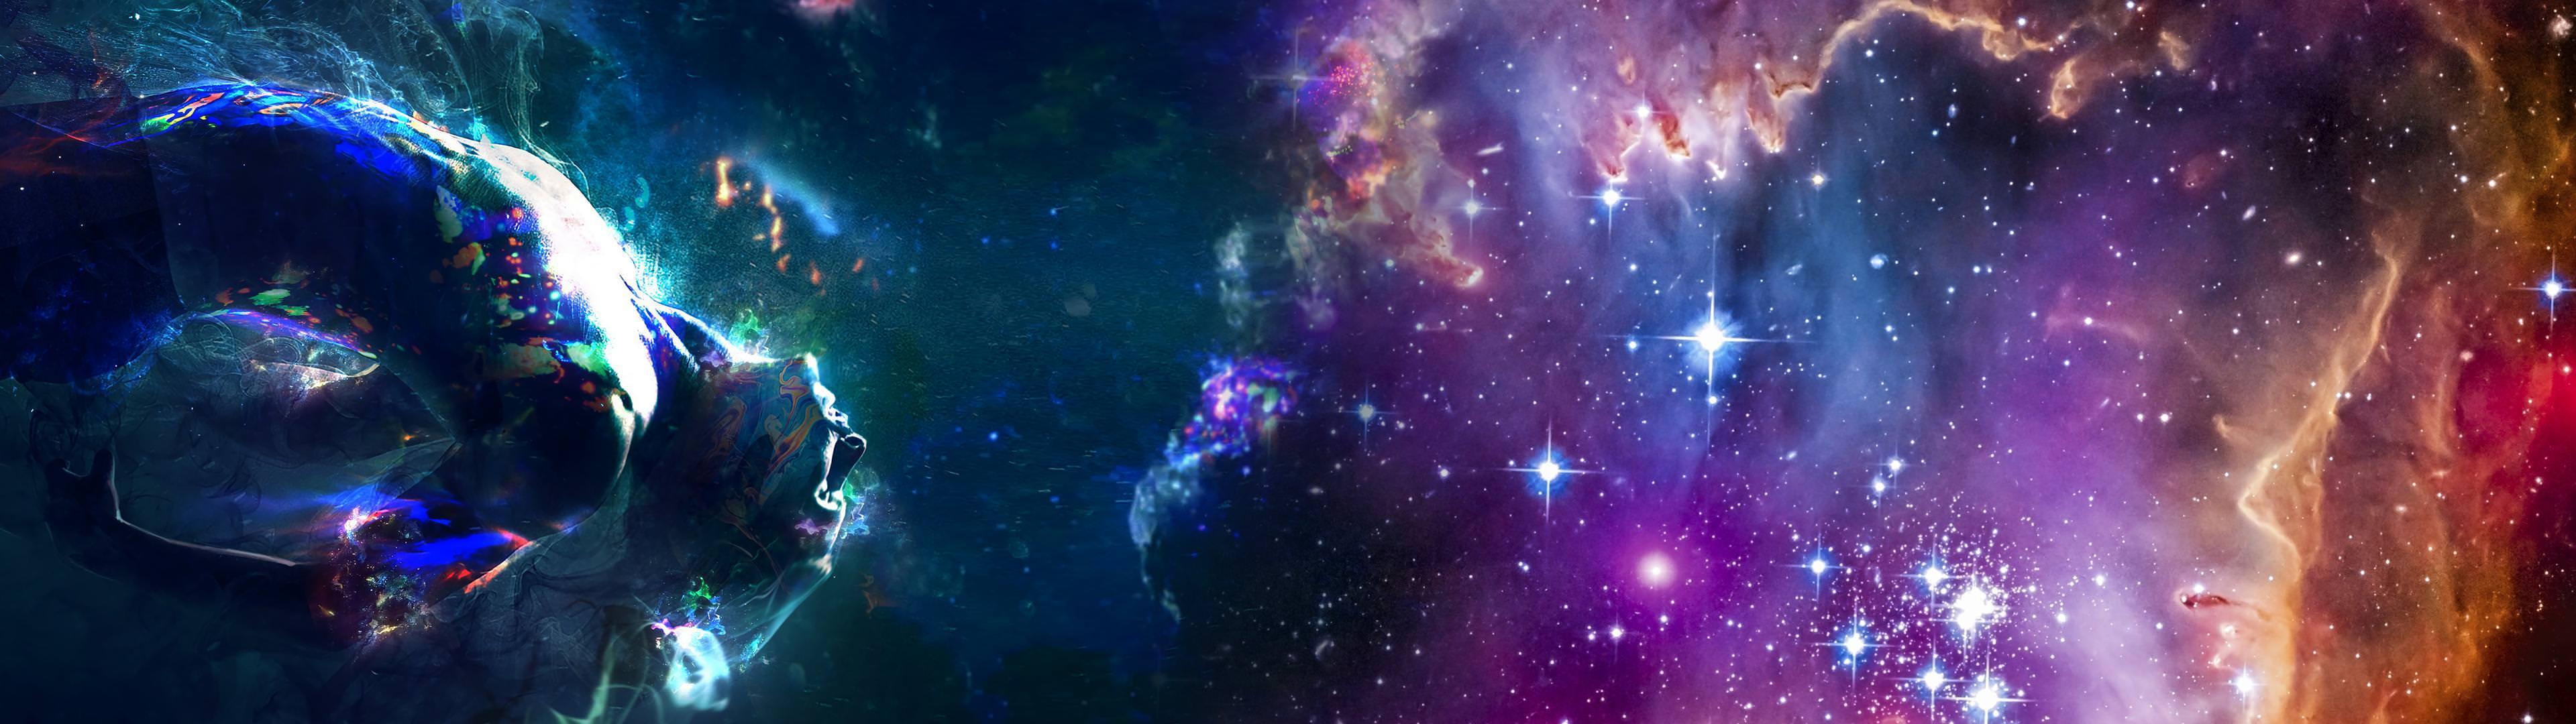 Hình nền đa màn hình thiên hà sẽ mang đến cho bạn cảm giác như đang trải nghiệm trên một chiếc tàu vũ trụ đang bay với tốc độ ánh sáng. Cảm nhận nhịp đập của vũ trụ và vô vàn những điều kỳ diệu trong không gian bao la.